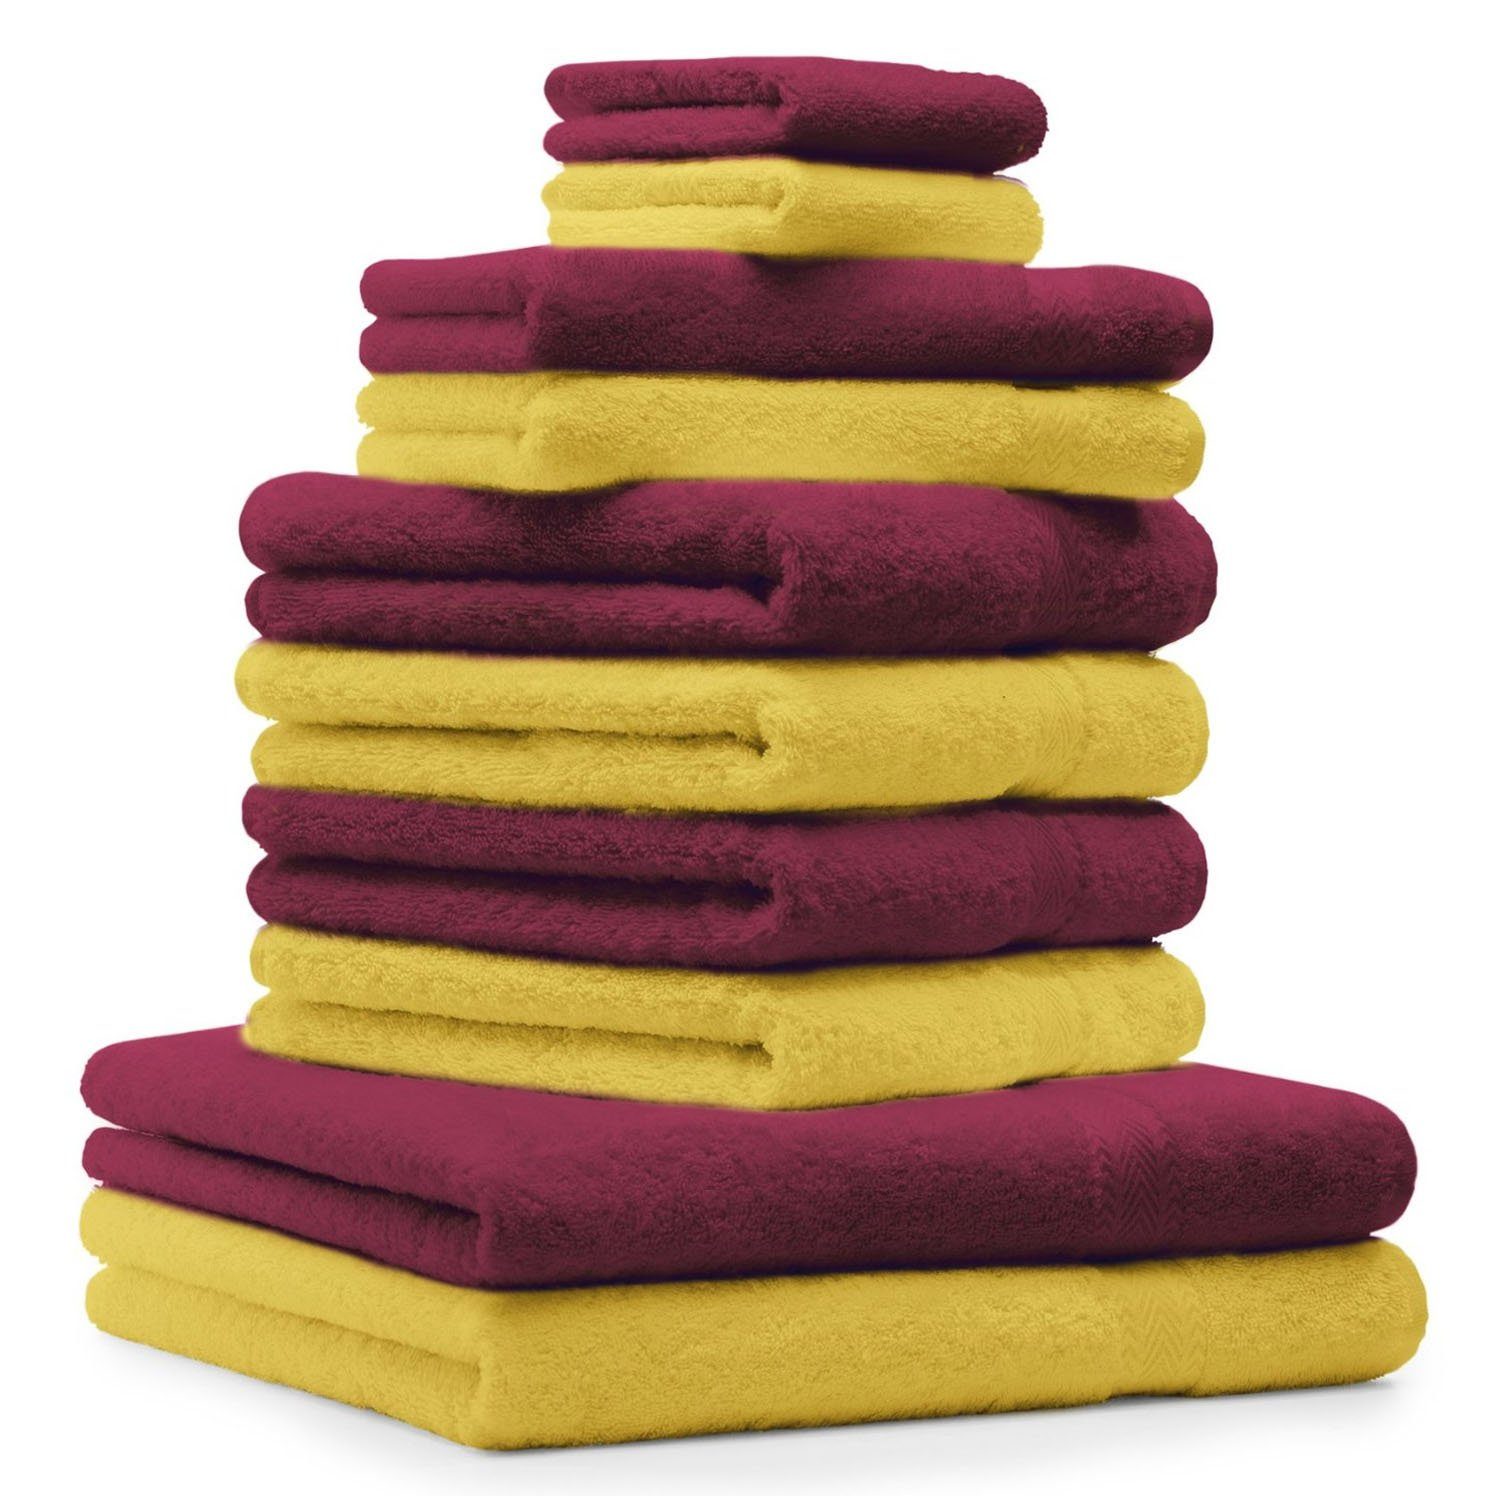 Betz Handtuch Set 10-TLG. Handtuch-Set Baumwolle dunkelrot, gelb 100% und Farbe